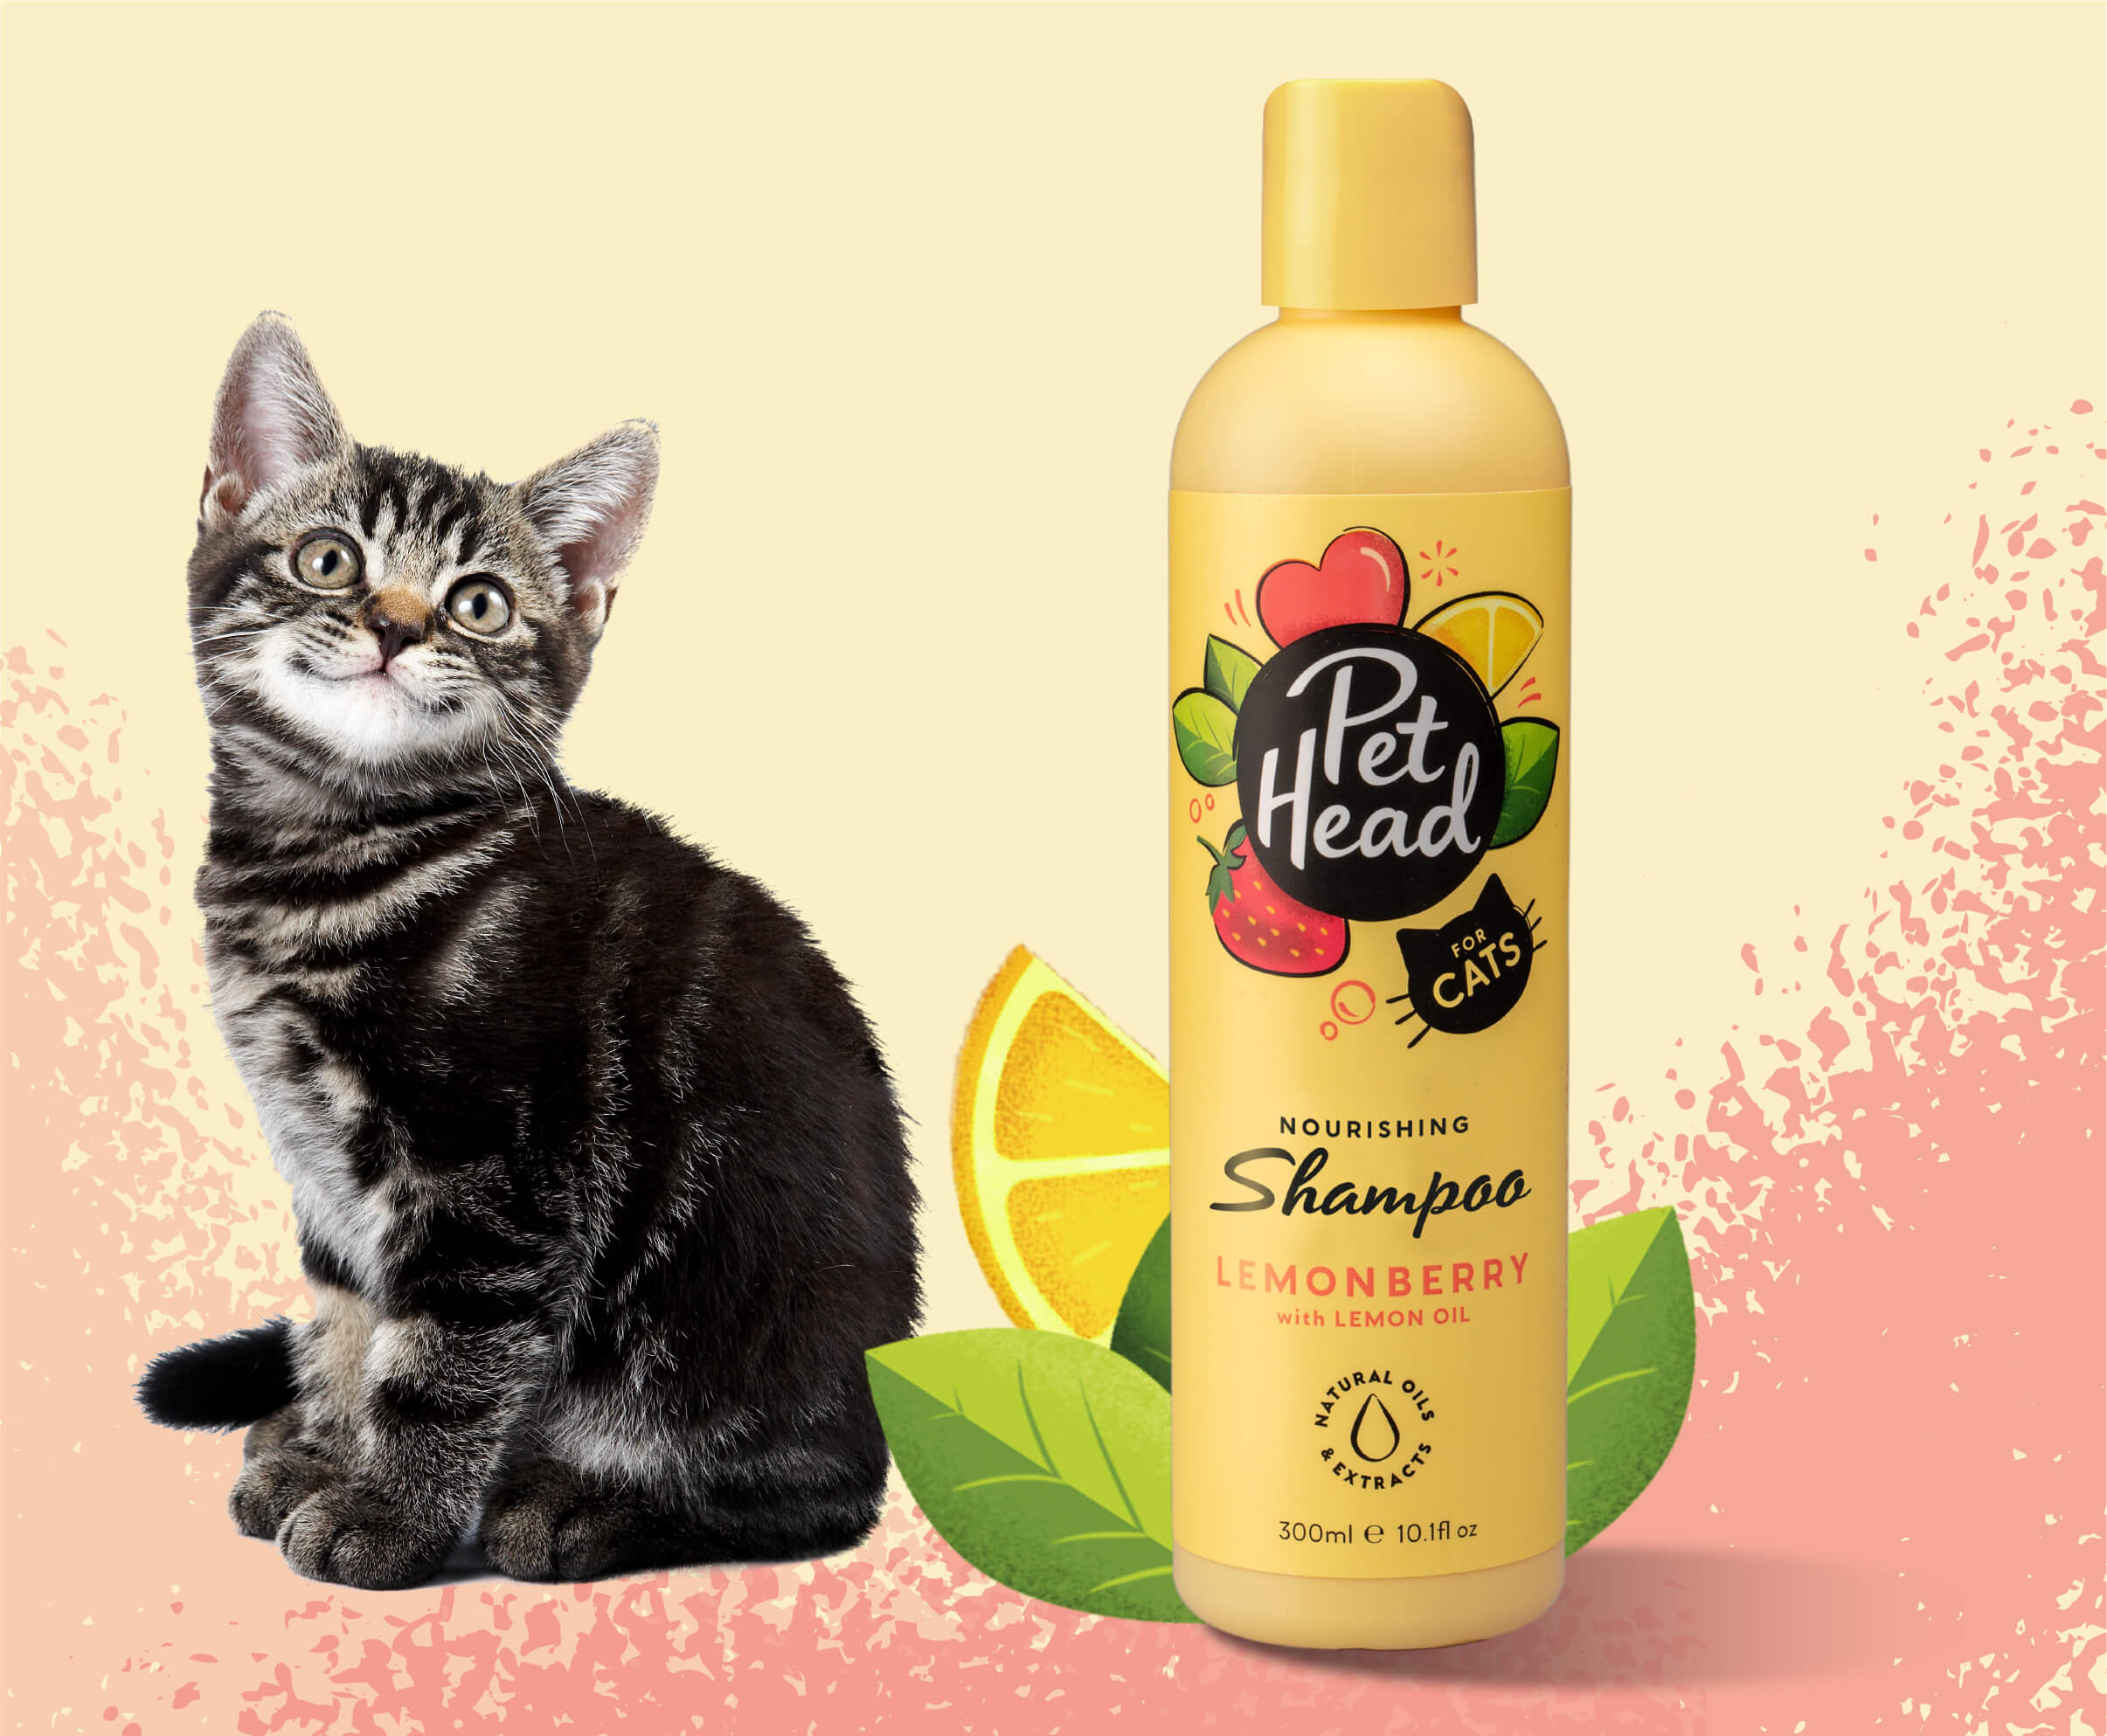 Product shot of the Pet Head Felin' Good shampoo next to a happy kitten